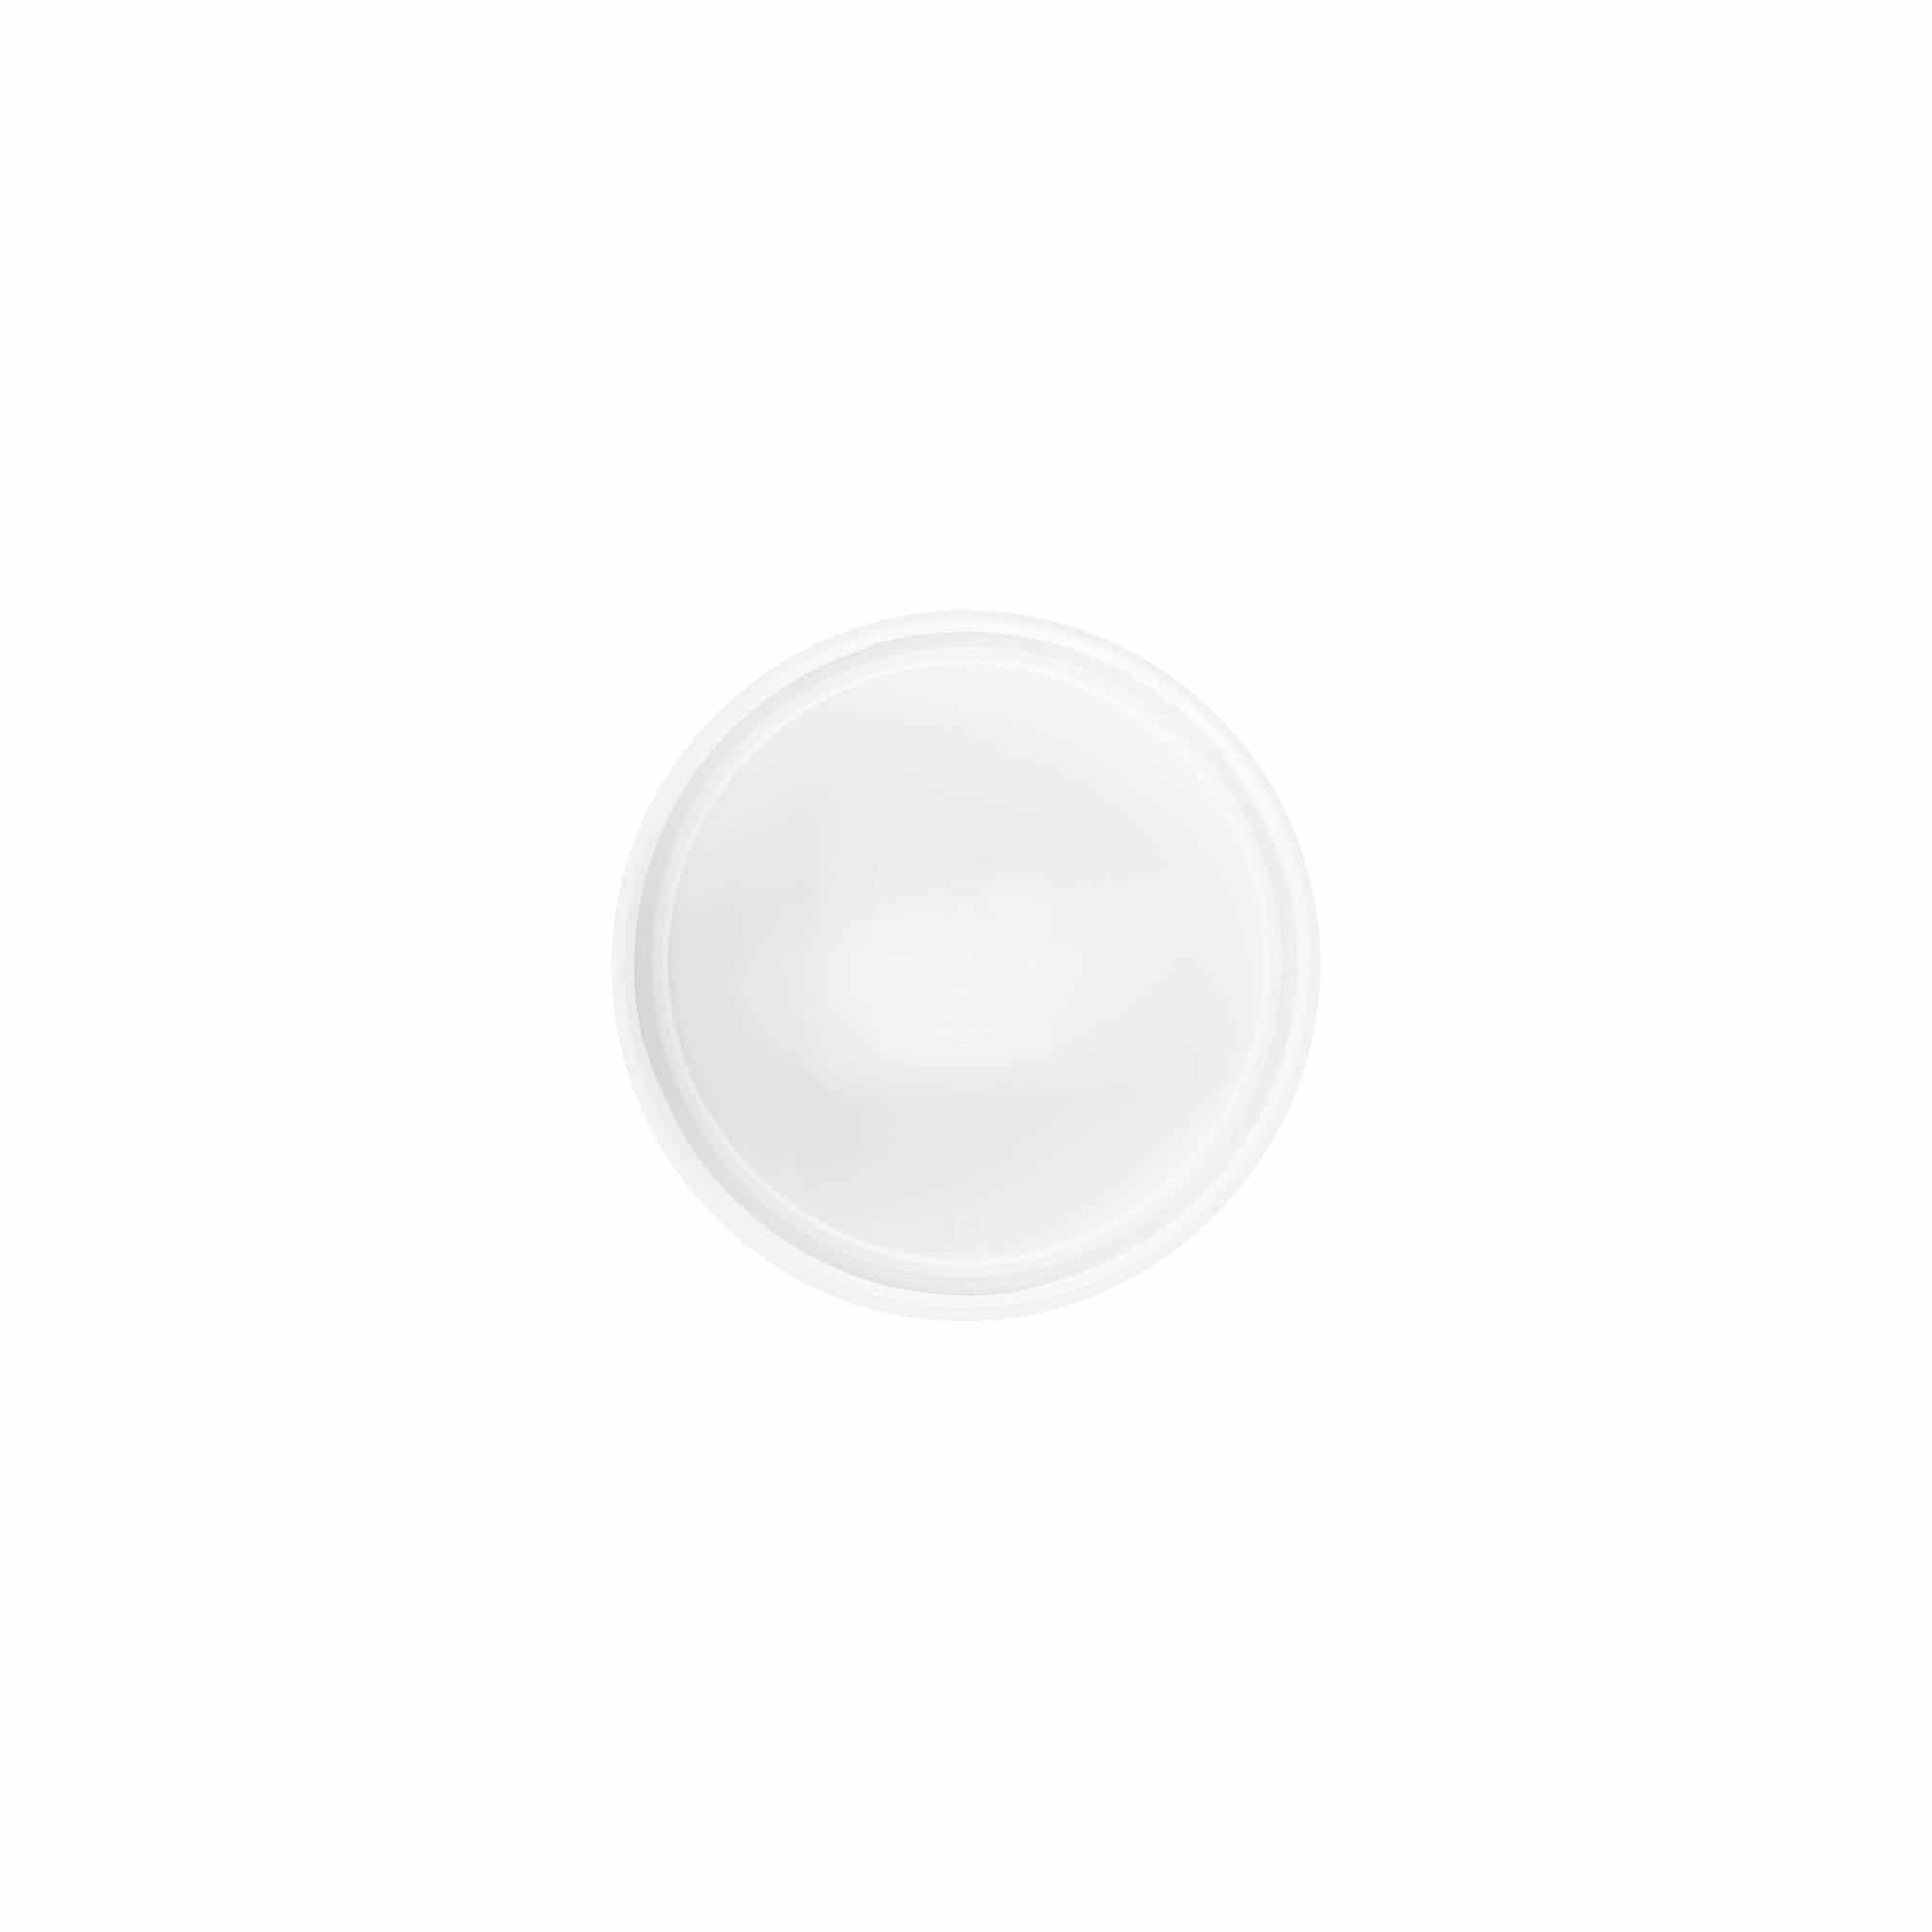 Skruelåg 'White Line' 60ml, PP-plast, hvid